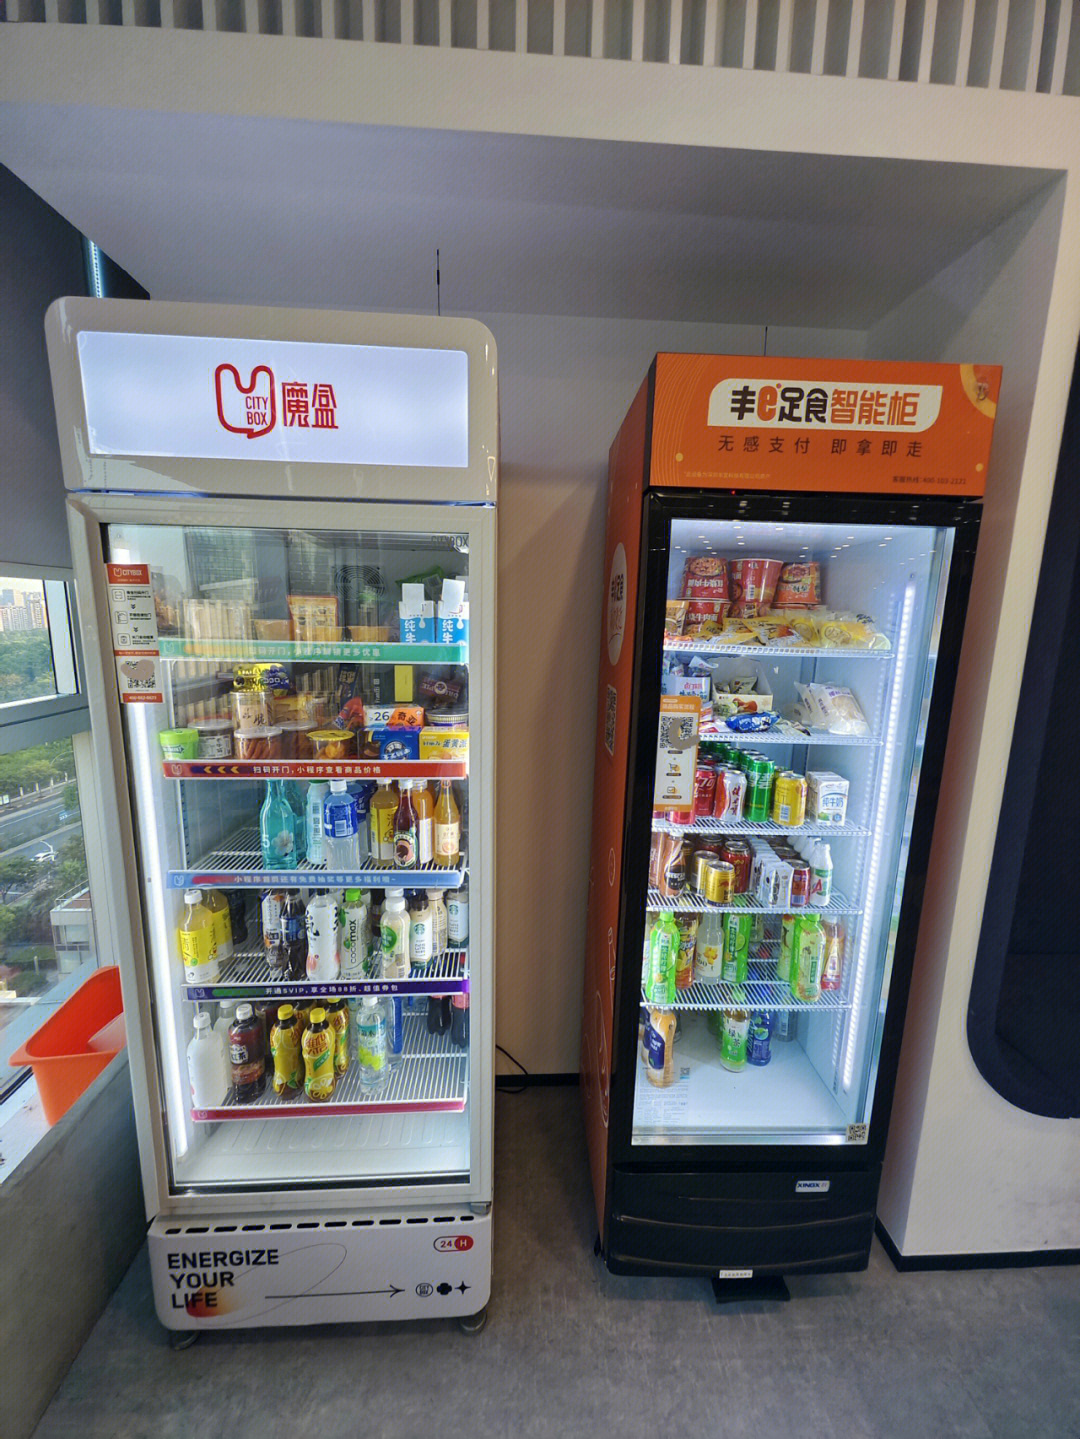 在上海拜访朋友公司,在公司前台看到两个无人自助货架冰箱,分别是魔盒